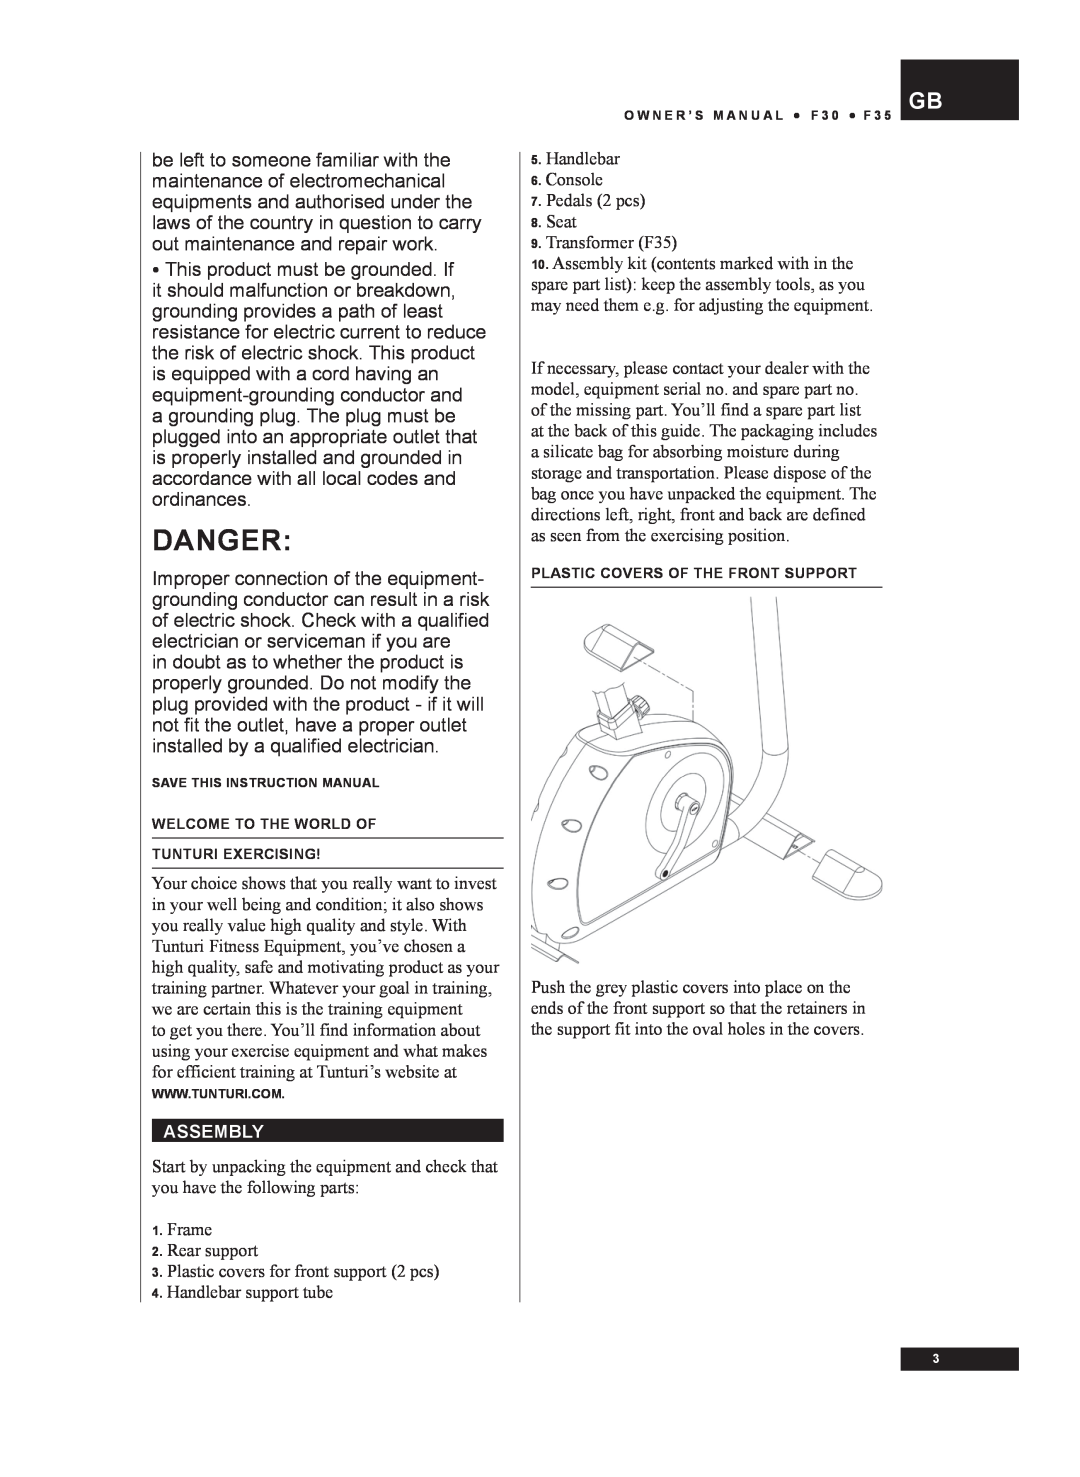 Tunturi F30, F35 owner manual Danger 